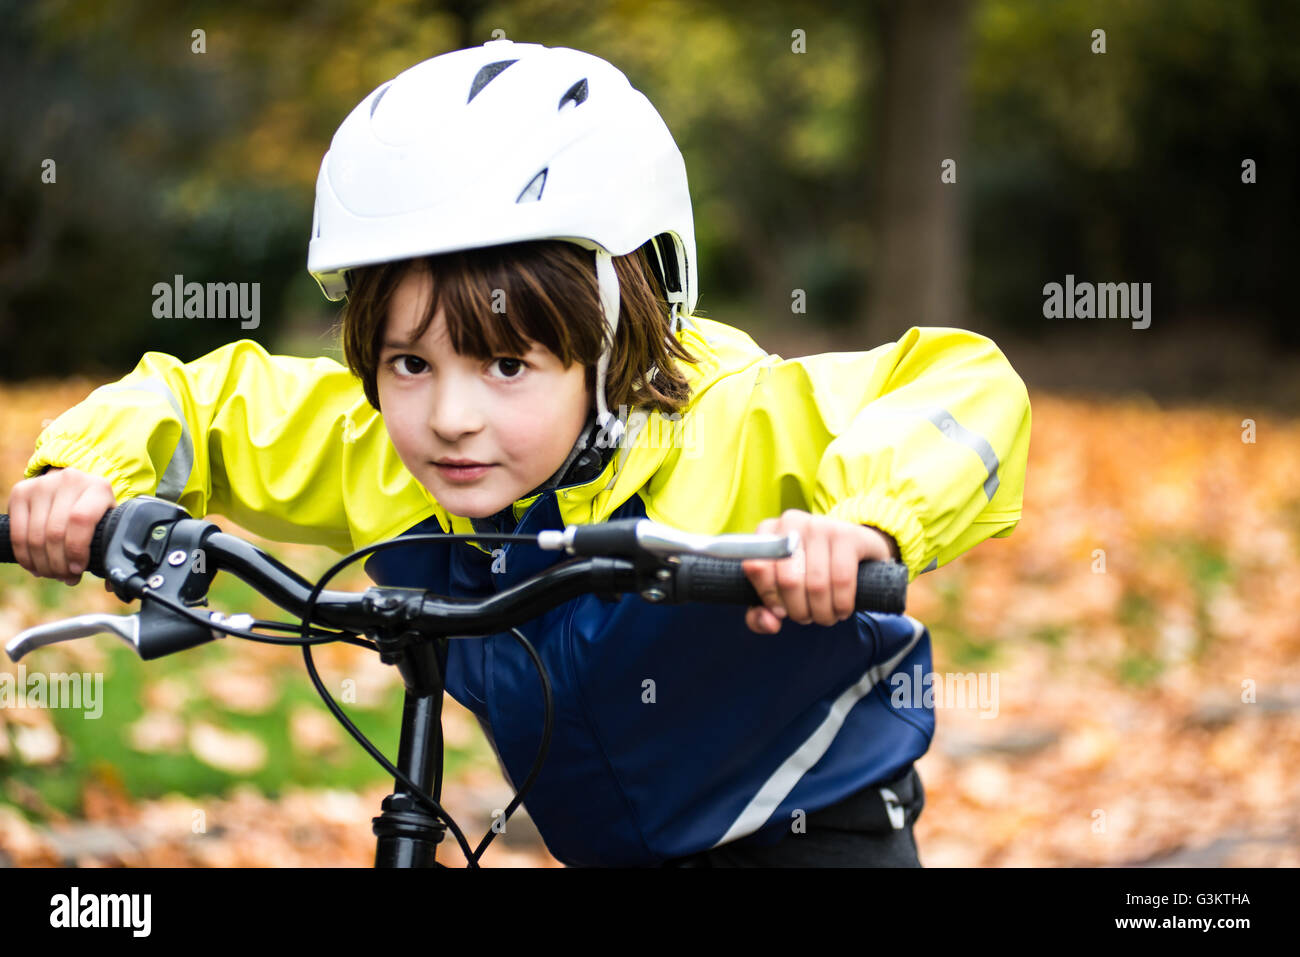 Bebé En Un Casco De Bicicleta Más Grande Con Fondo Blanco Imagen de archivo  - Imagen de mayor, sobreprotector: 228984179